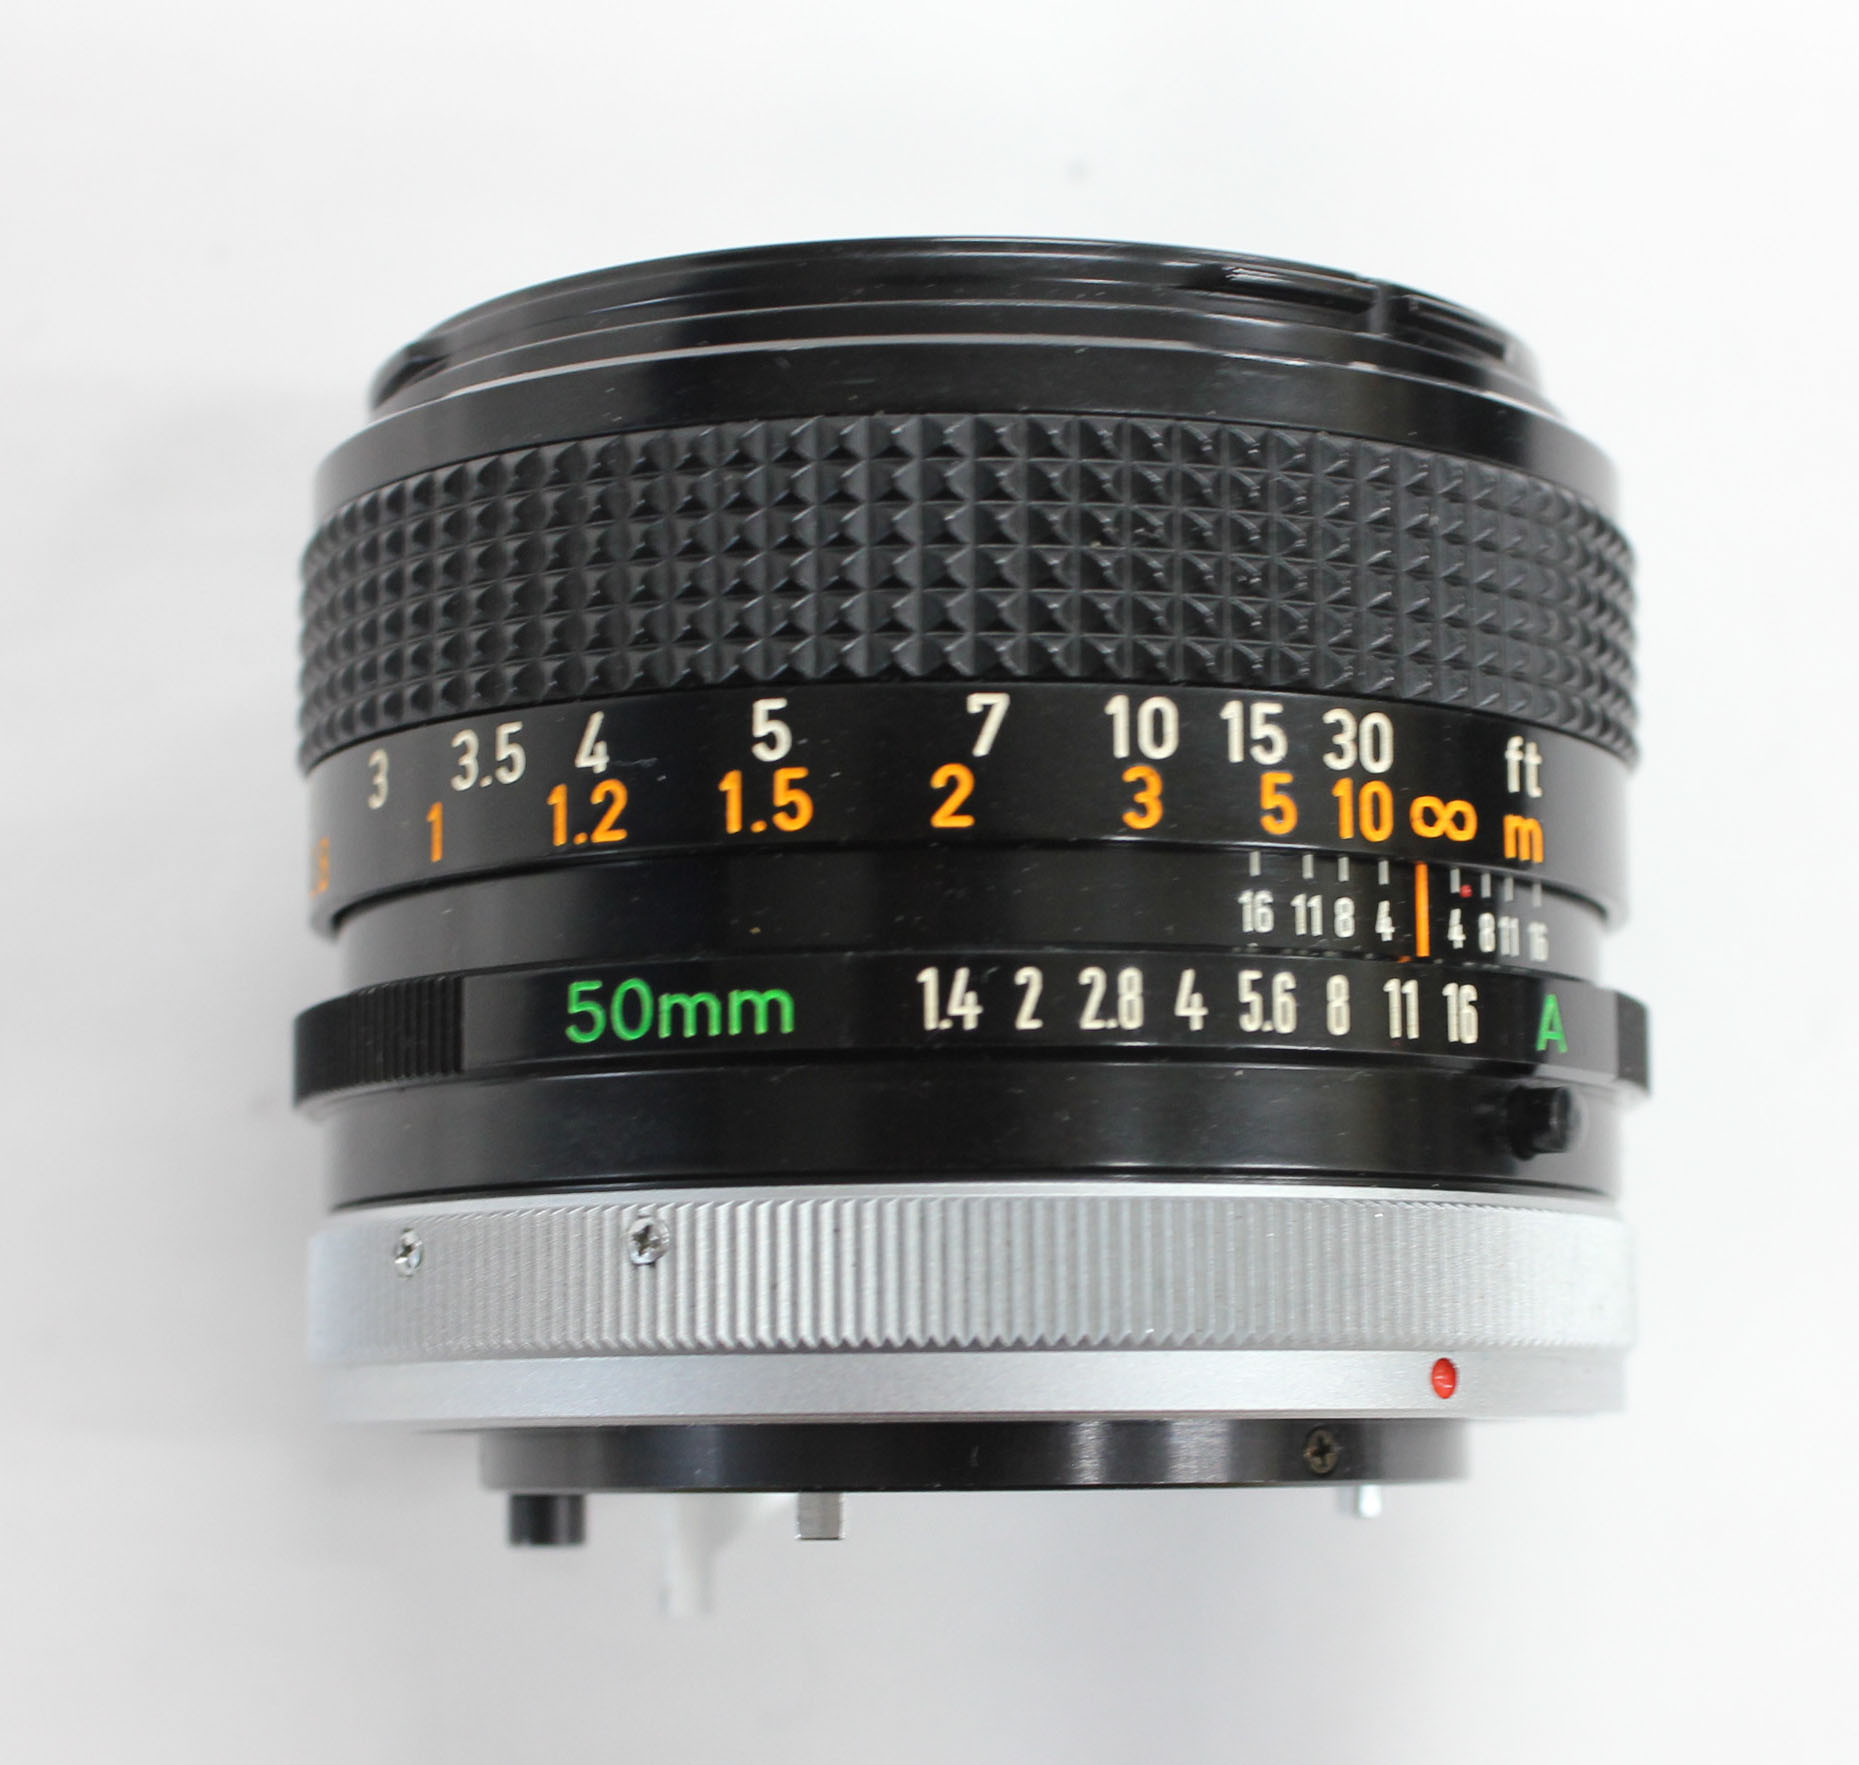 Canon AE-1 35mm SLR Camera with FD 50mm F/1.4 S.S.C. Lens from Japan Photo 14